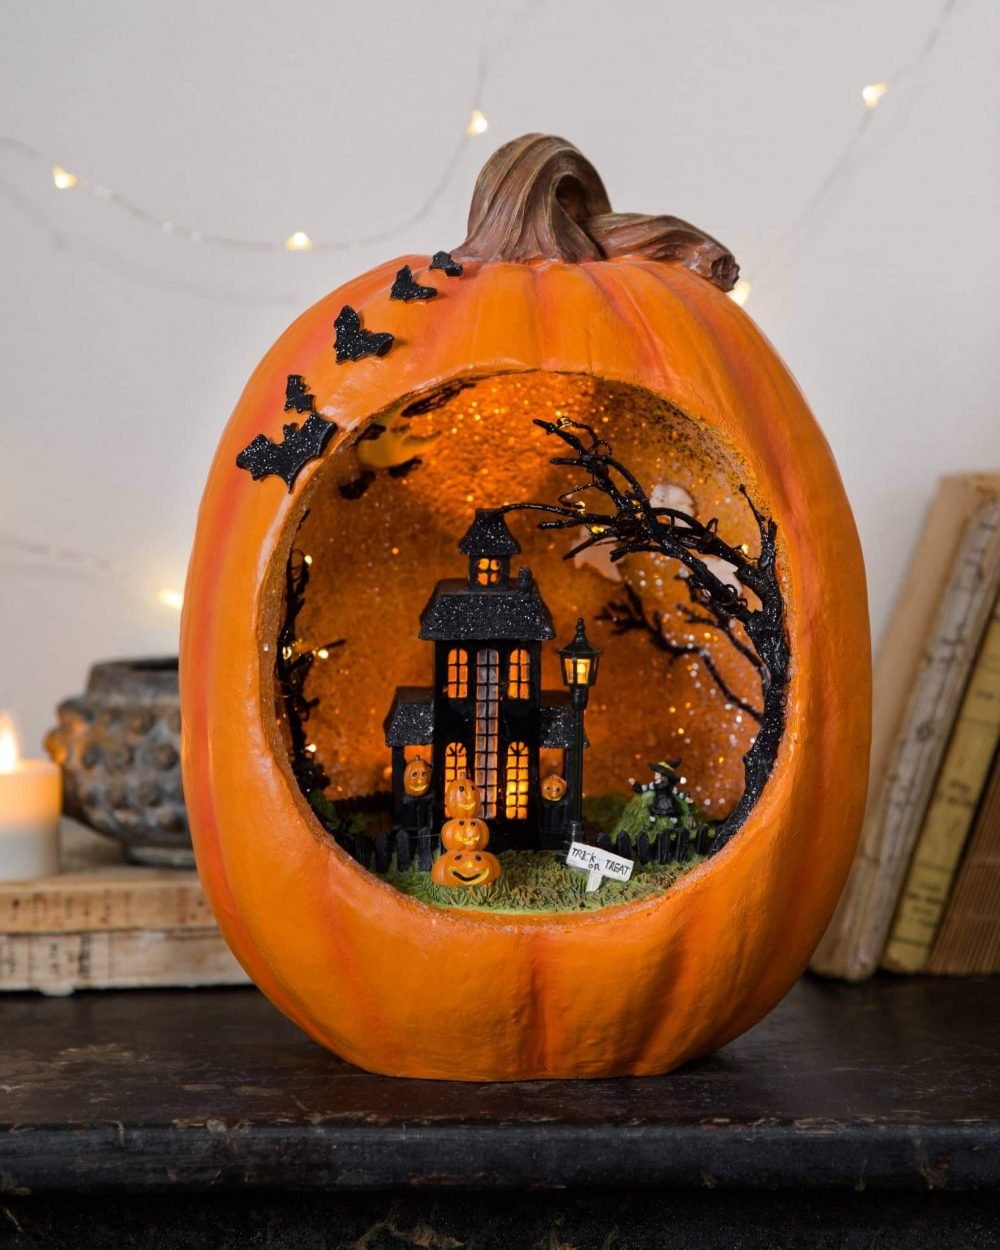 Halloween pumpkin crafting ideas
